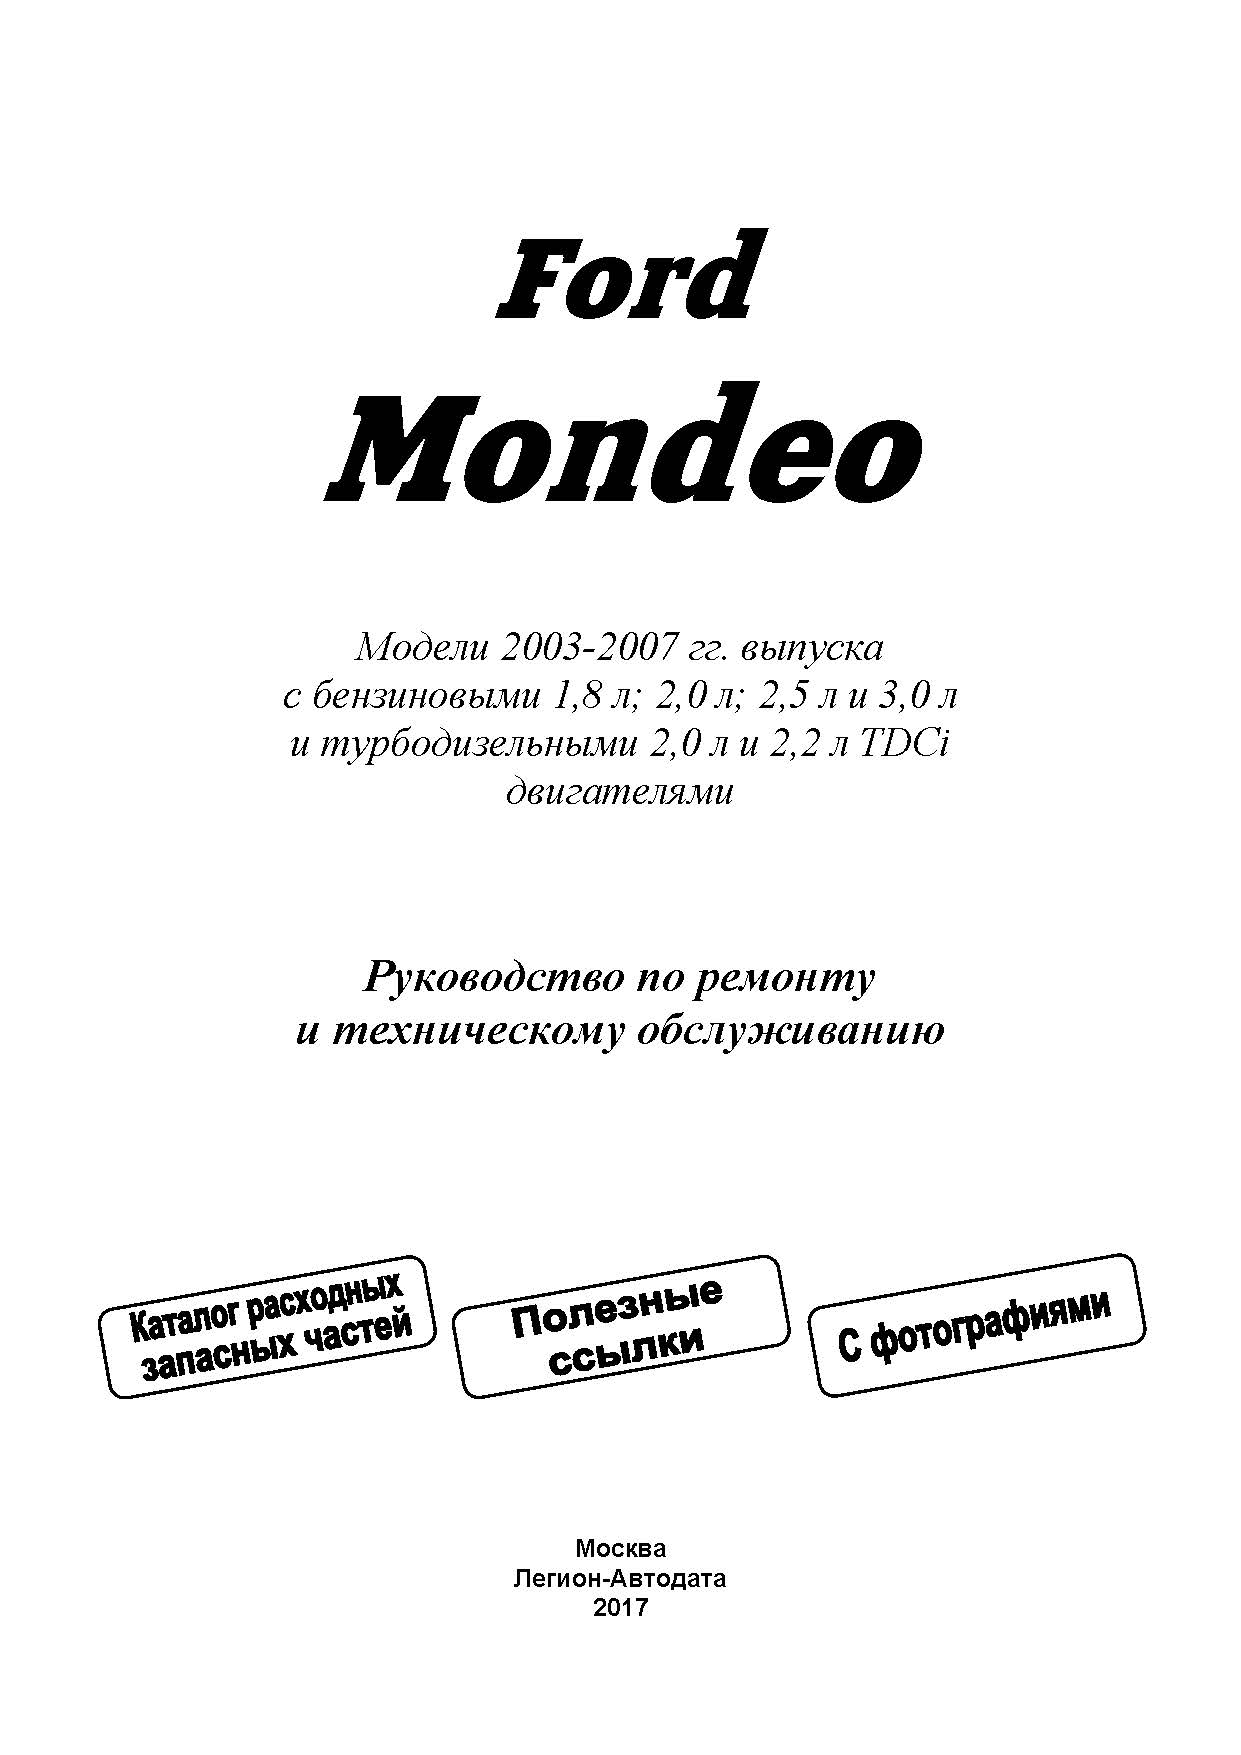 Книга: FORD MONDEO (б , д) 2003-2007 г.в., рем., экспл., то | Легион-Aвтодата